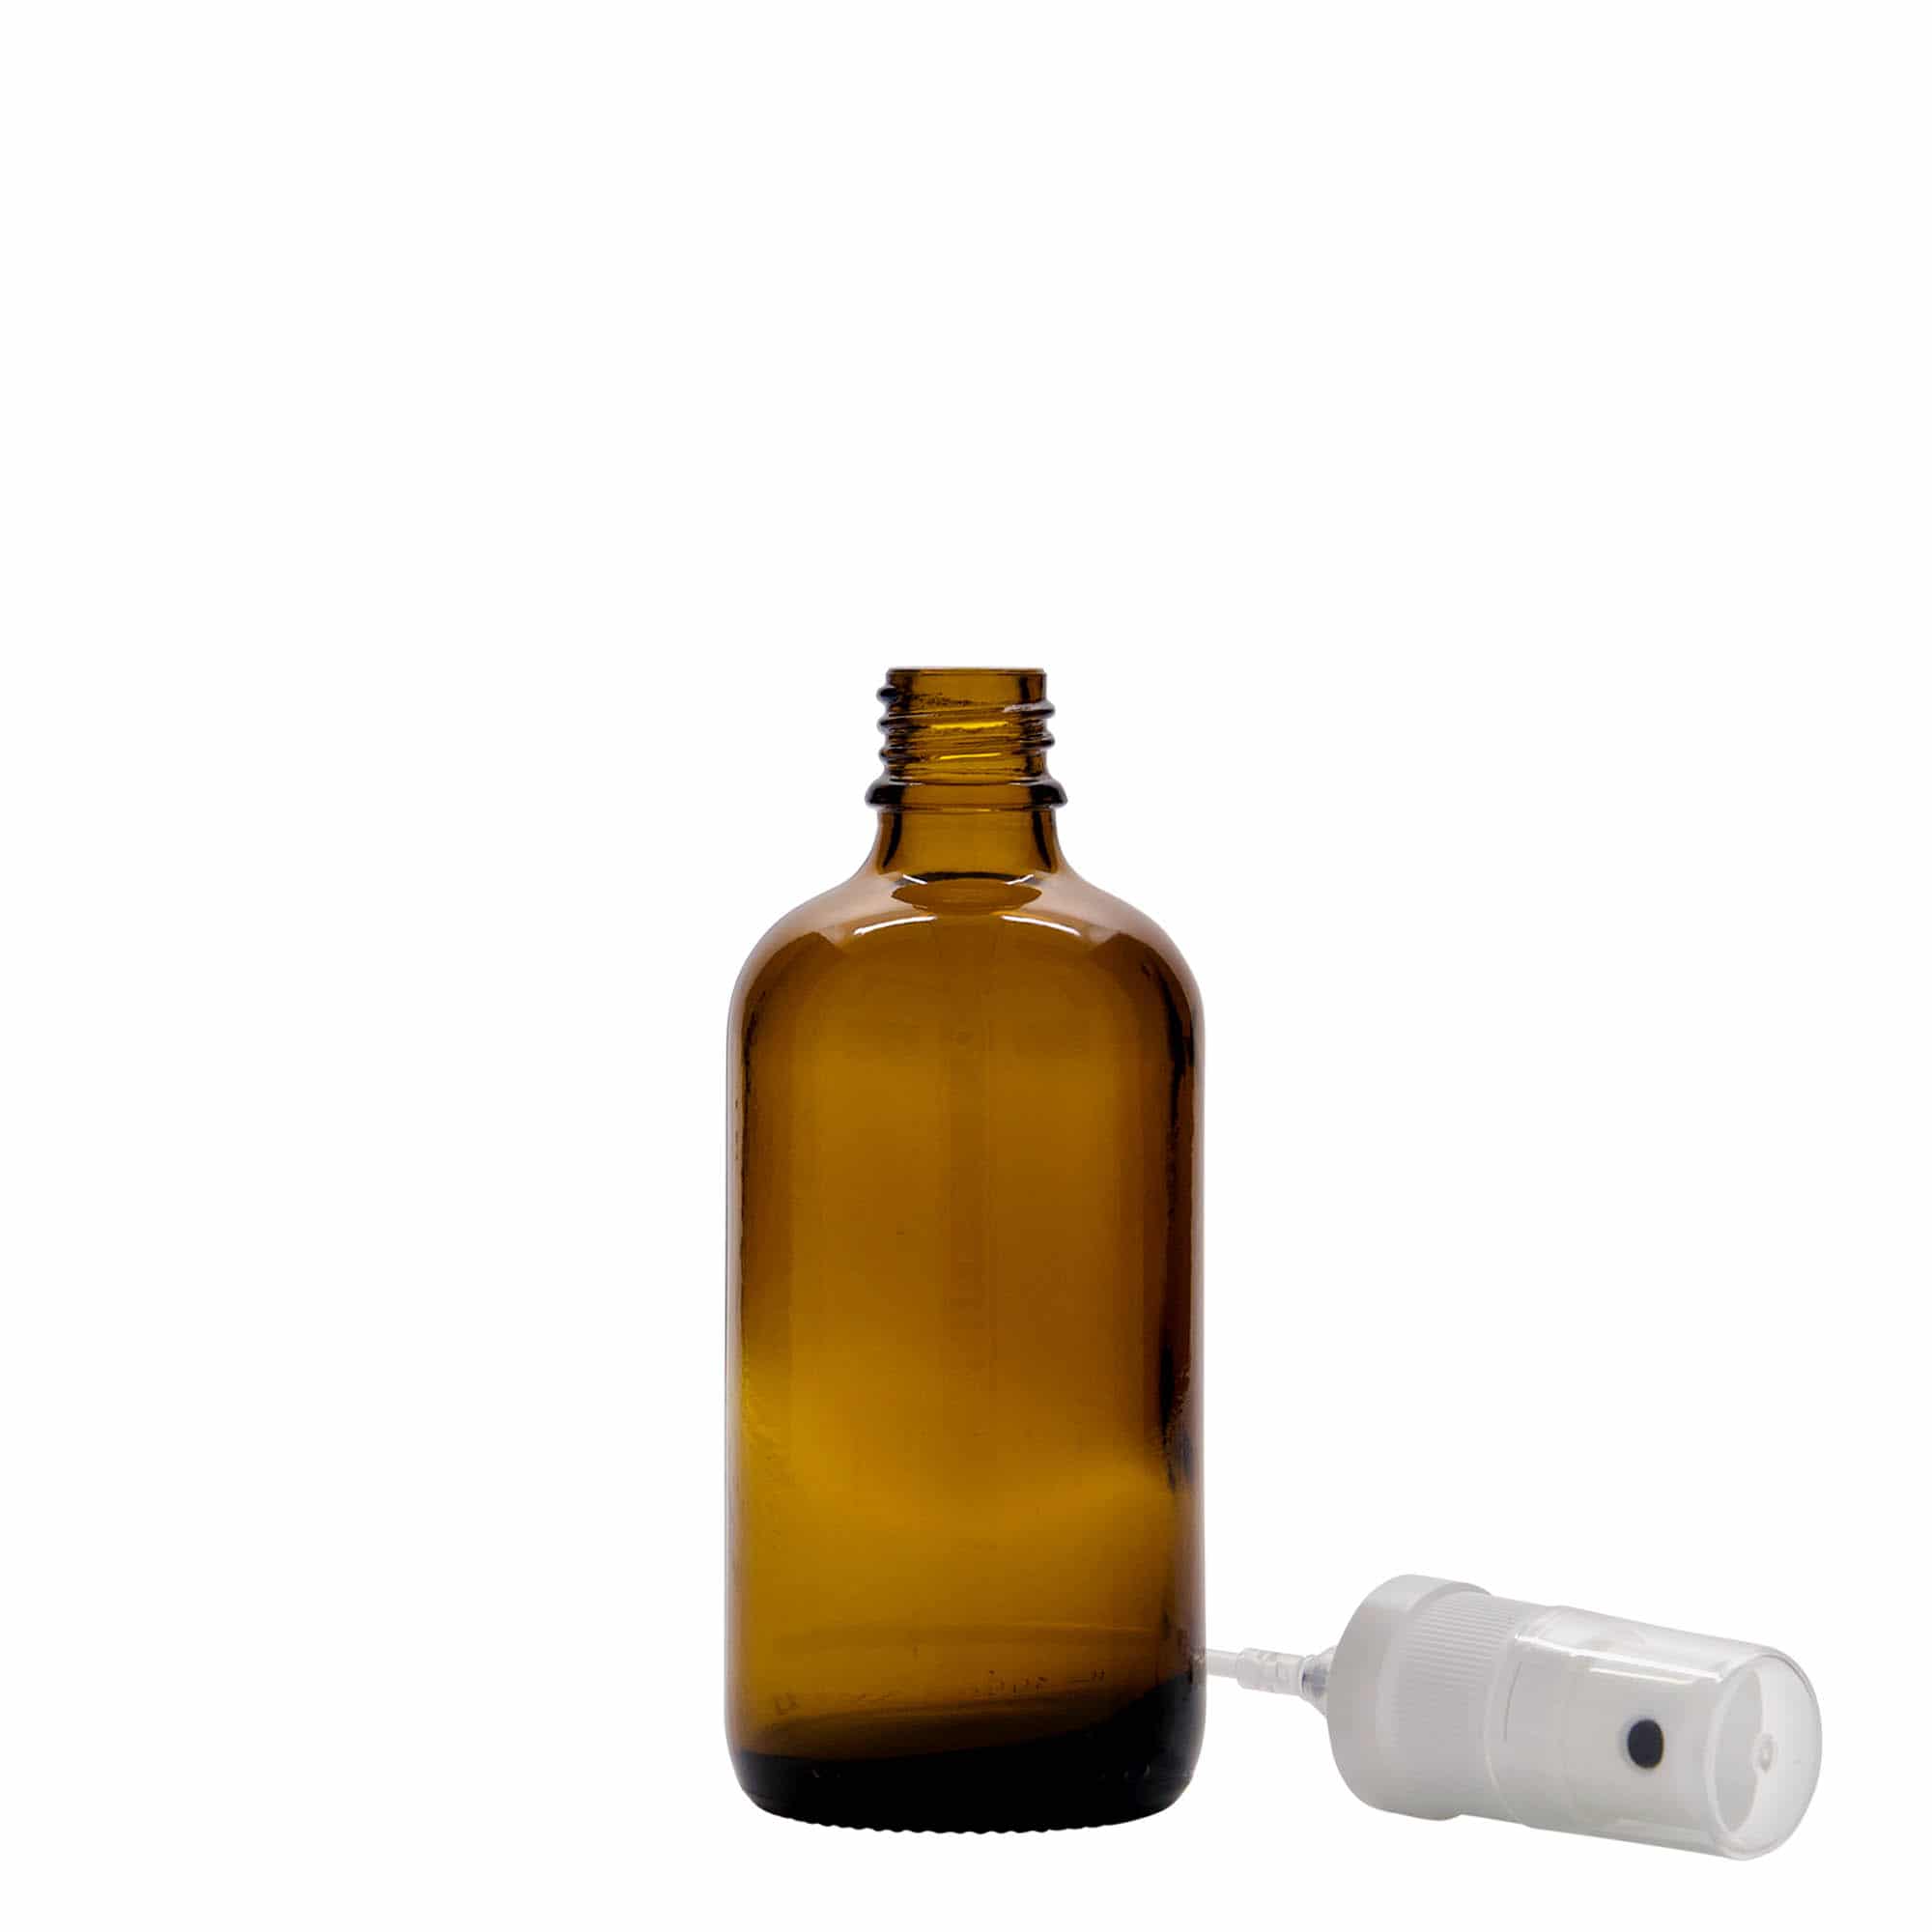 100 ml Flacone spray farmaceutico, vetro, marrone, imboccatura: DIN 18